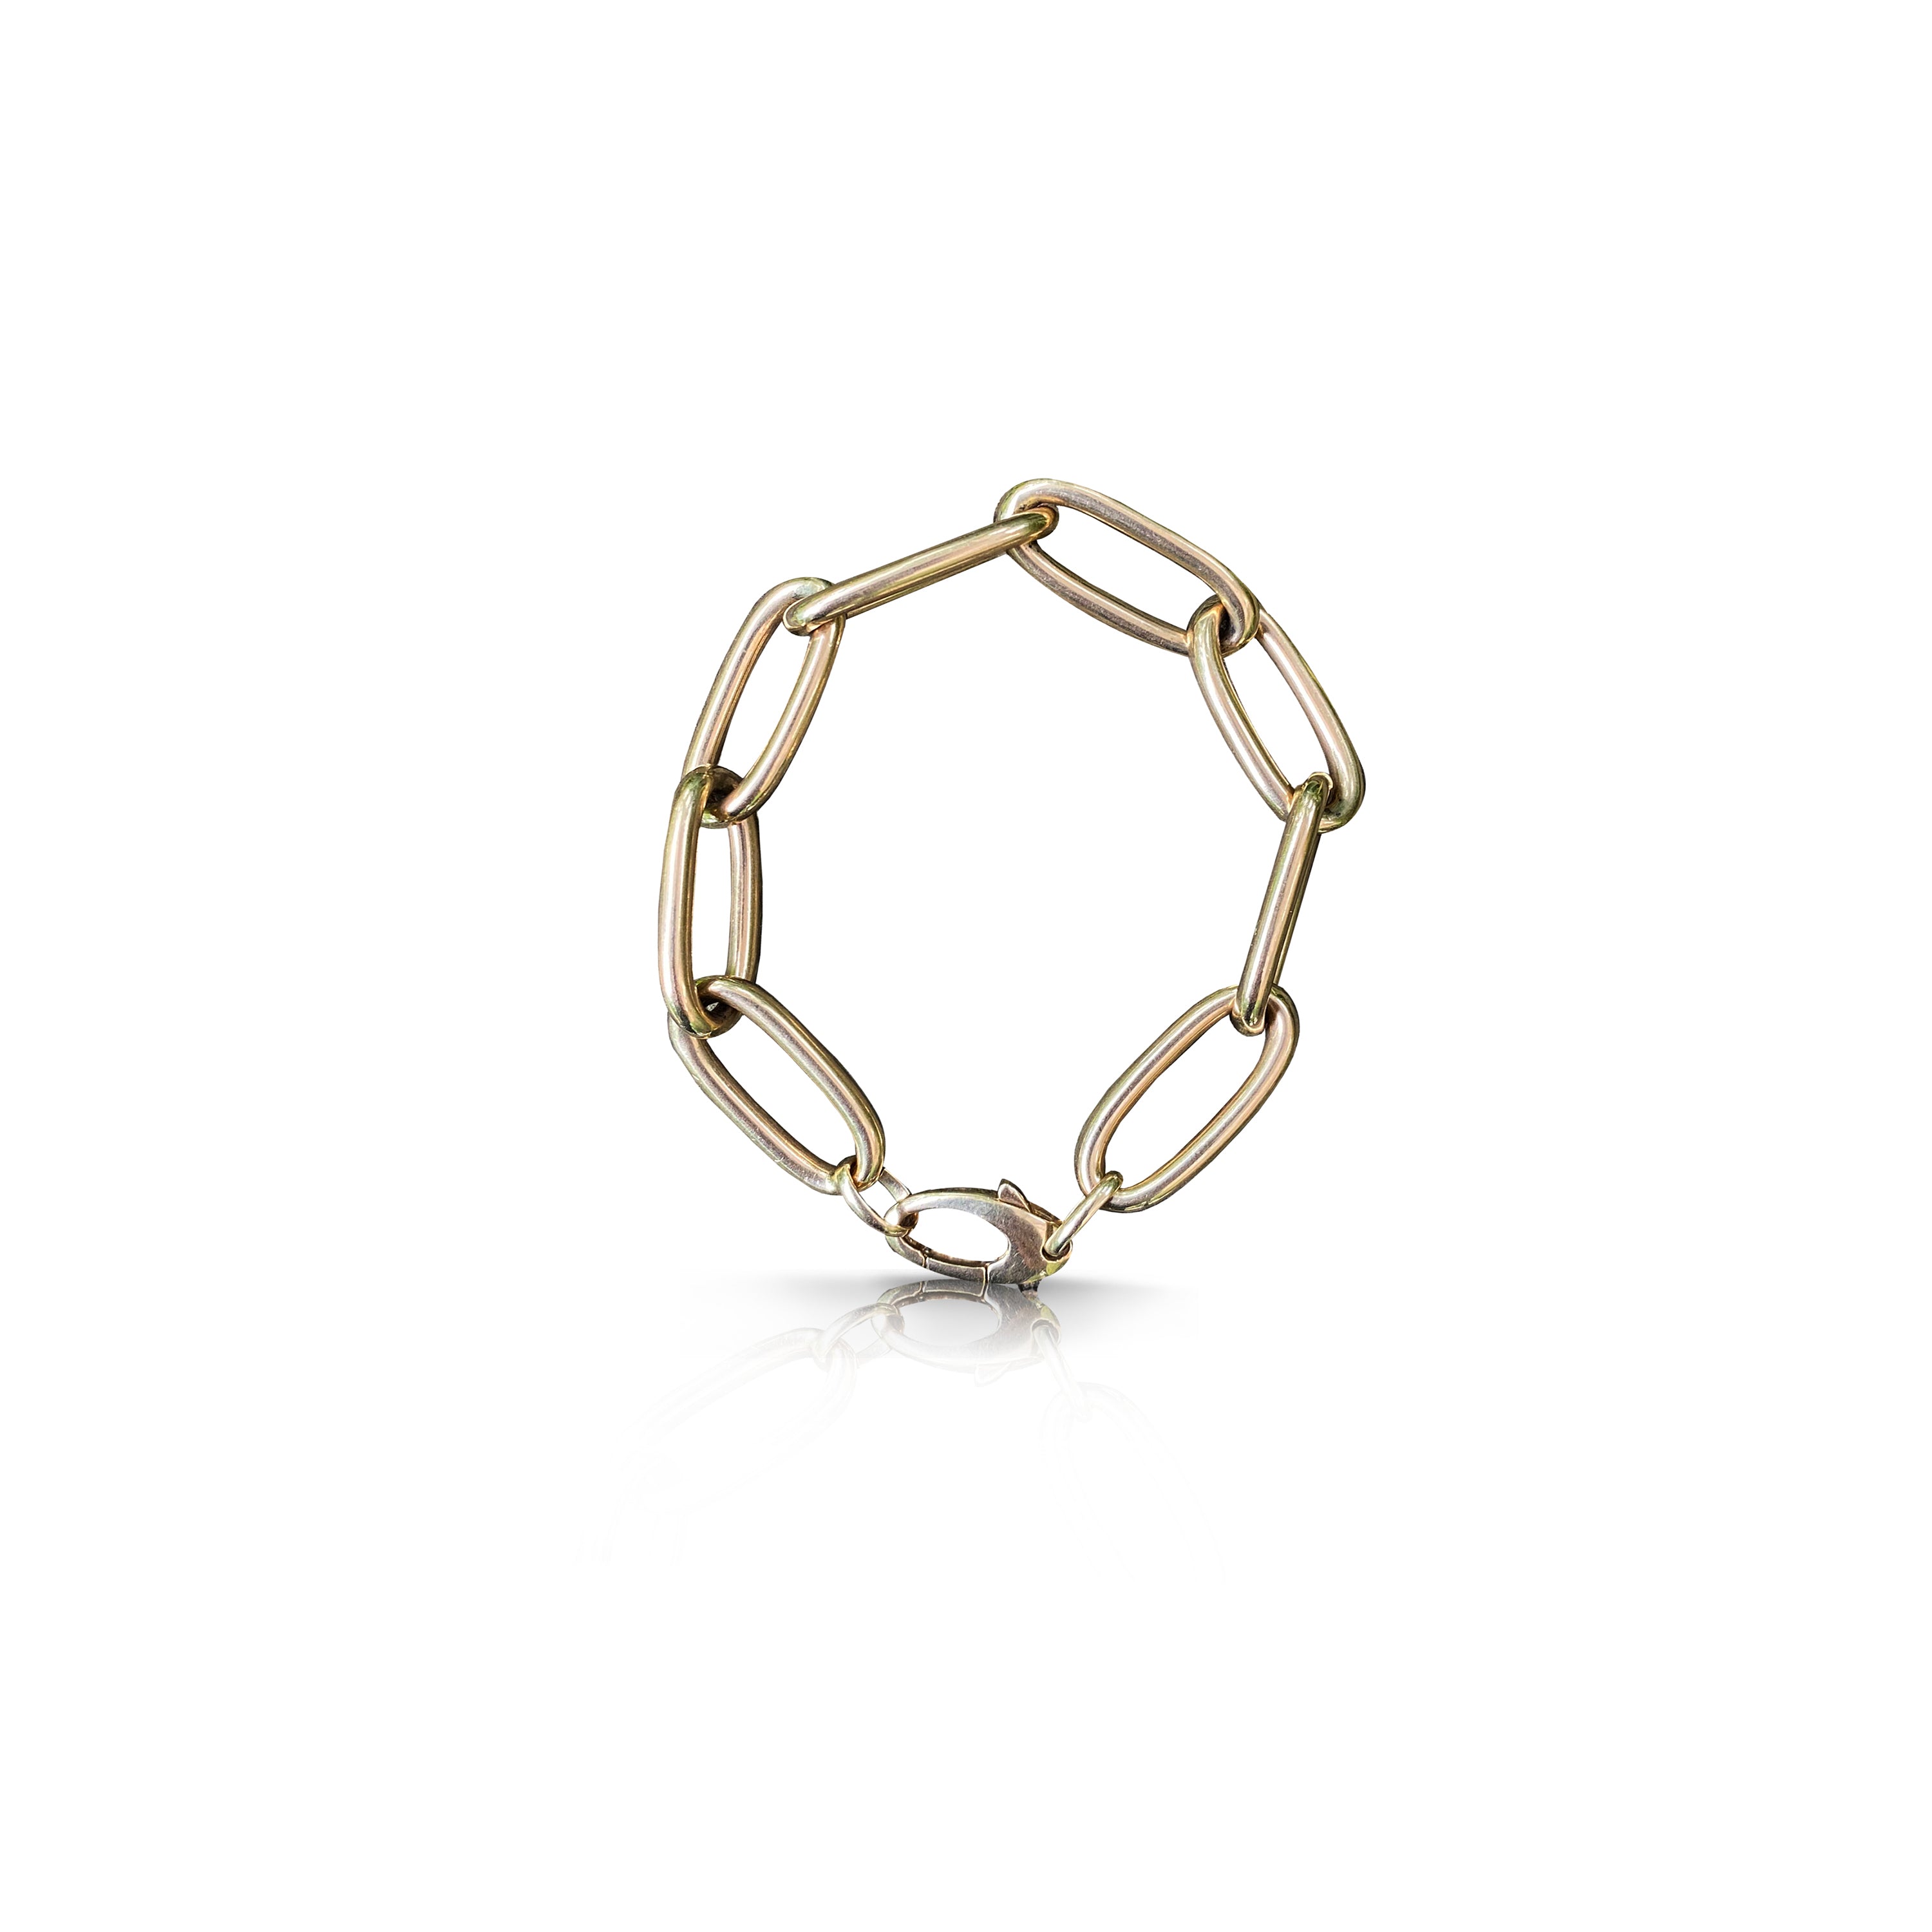 14k Jumbo Chain Bracelet by S. Carter Designs